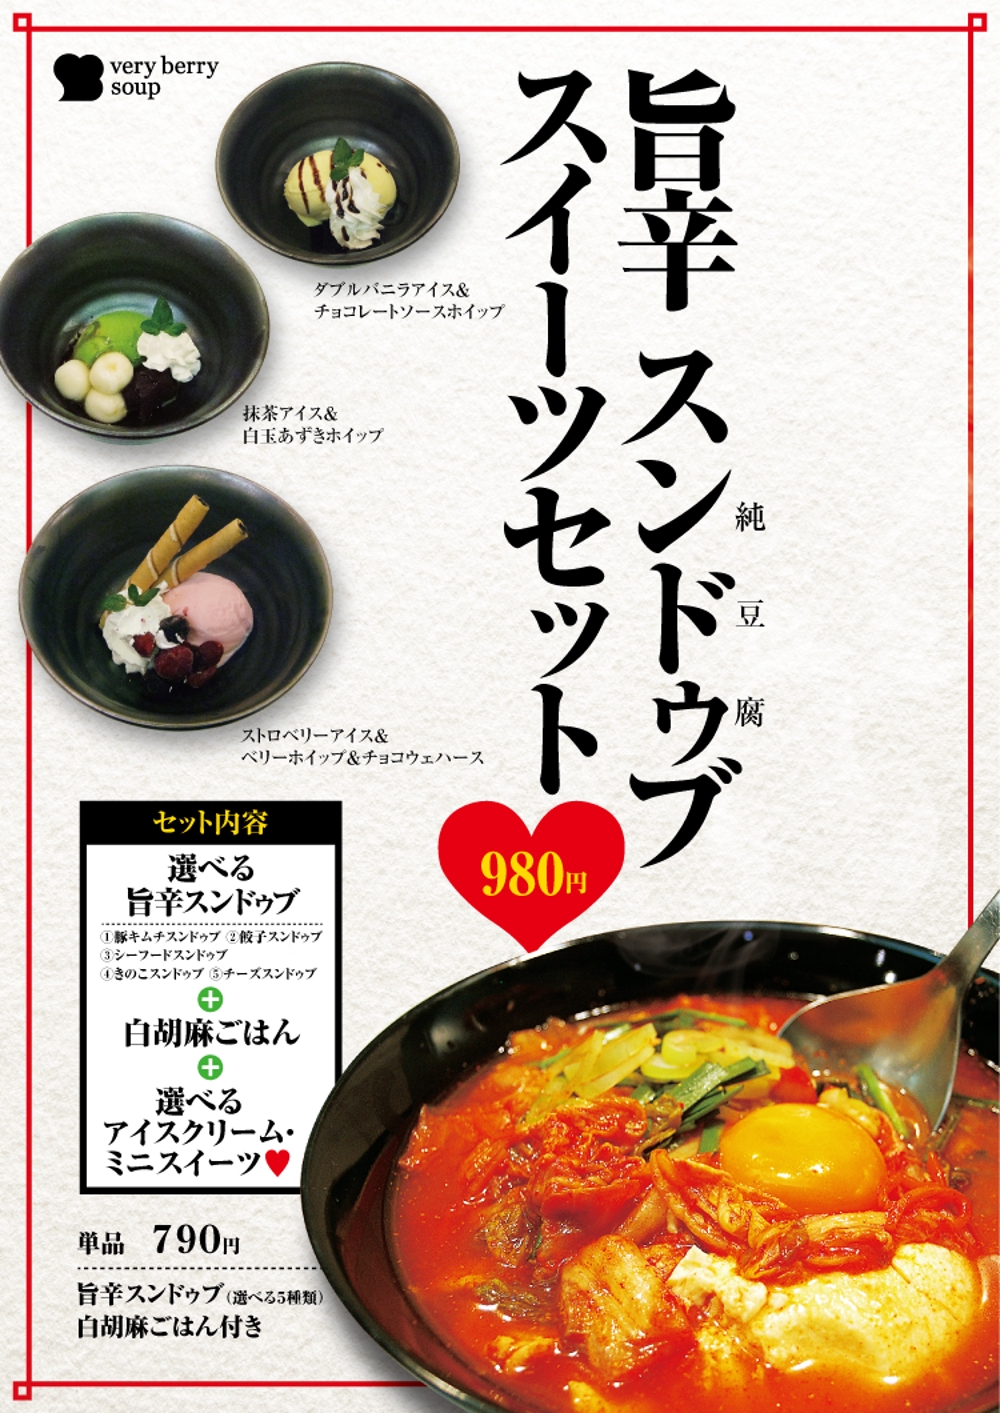 スープ専門店のスンドゥブ（純豆腐）フェアポスターのデザイン